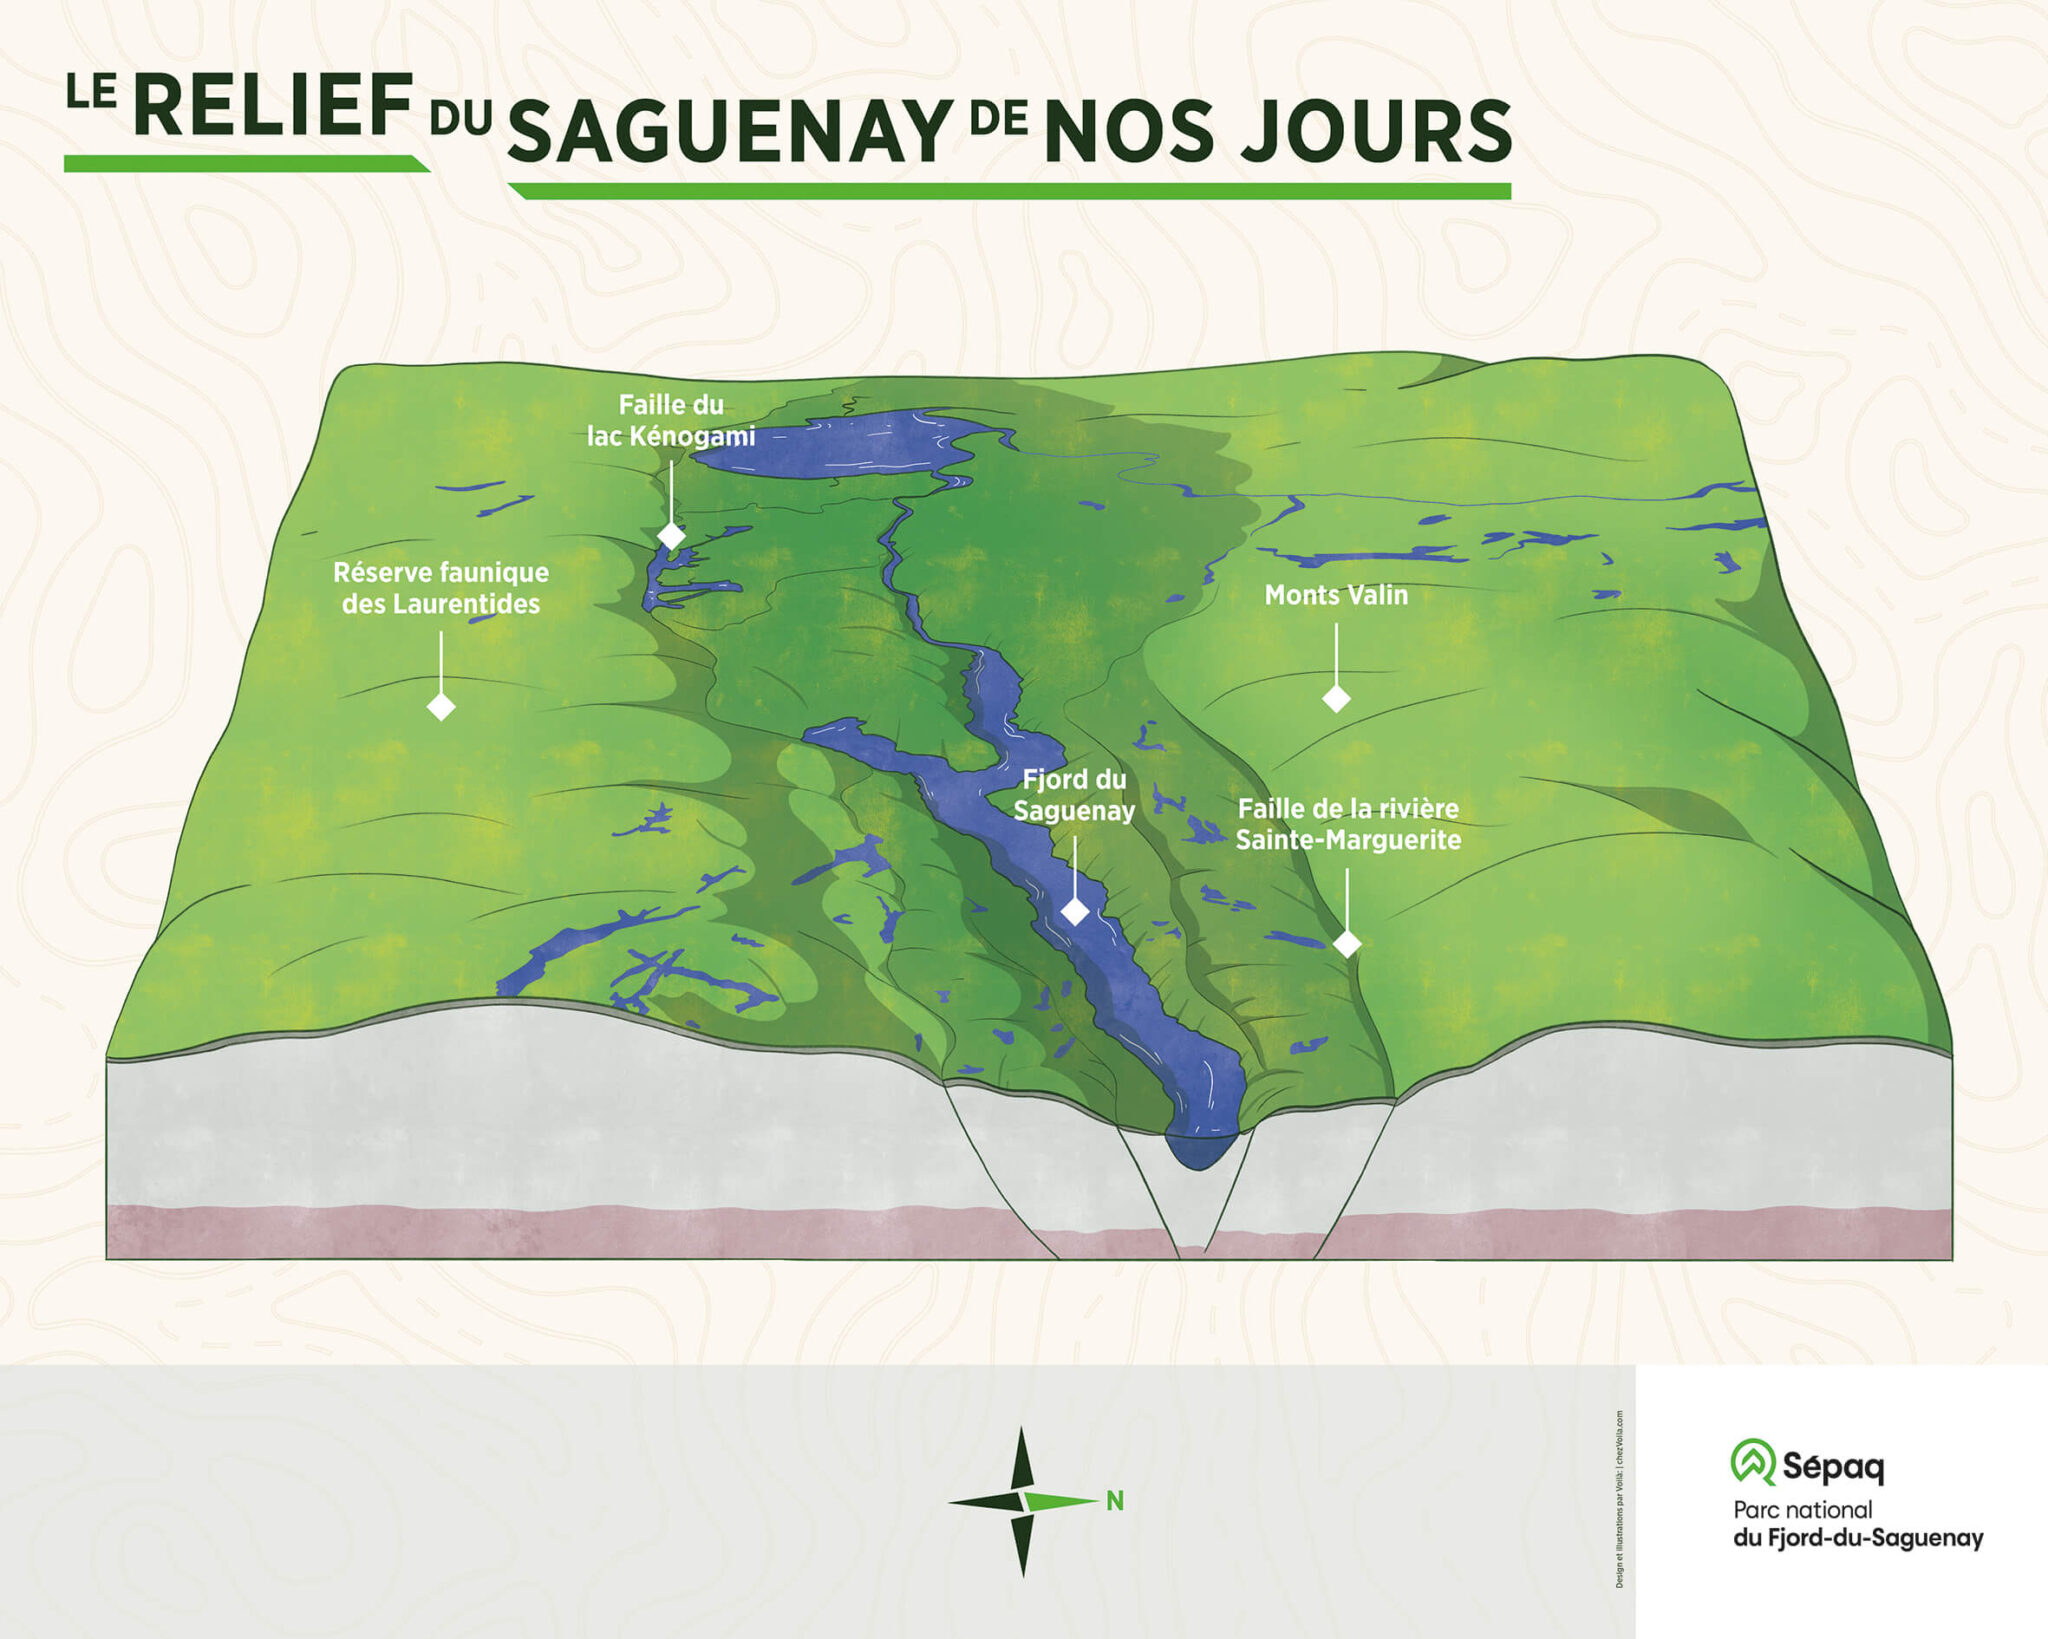 Le titre de l’image est “Le relief du Saguenay de nos jours”. Ce panneau présente une vue aérienne illustrée d’une partie de la région du Saguenay, de face: elle démarre à Tadoussac, au bas, et se termine au lac Saint-Jean, en haut, au fond. On y voit la rivière Saguenay, en bleu, qui coule entre ces deux endroits. Le relief de la région est exagéré pour permettre de bien comprendre la forme du graben: creux le long de la rivière et bombé sur les bords de la vallée. Des légendes pointent les repères géographiques suivants: à gauche, la réserve faunique des laurentides; plus haut, au fond, la faille du Lac Kénogami; au centre, plus bas, le Fjord du Saguenay; à droite, le long de la rivière, la faille de la rivière sainte-Marguerite; plus à droite, là où le relief est plus accidenté, un pointeur indique les Monts Valins. Au bas du panneau, une rose des vents précise que le Nord se trouve en direction de la droite du panneau.